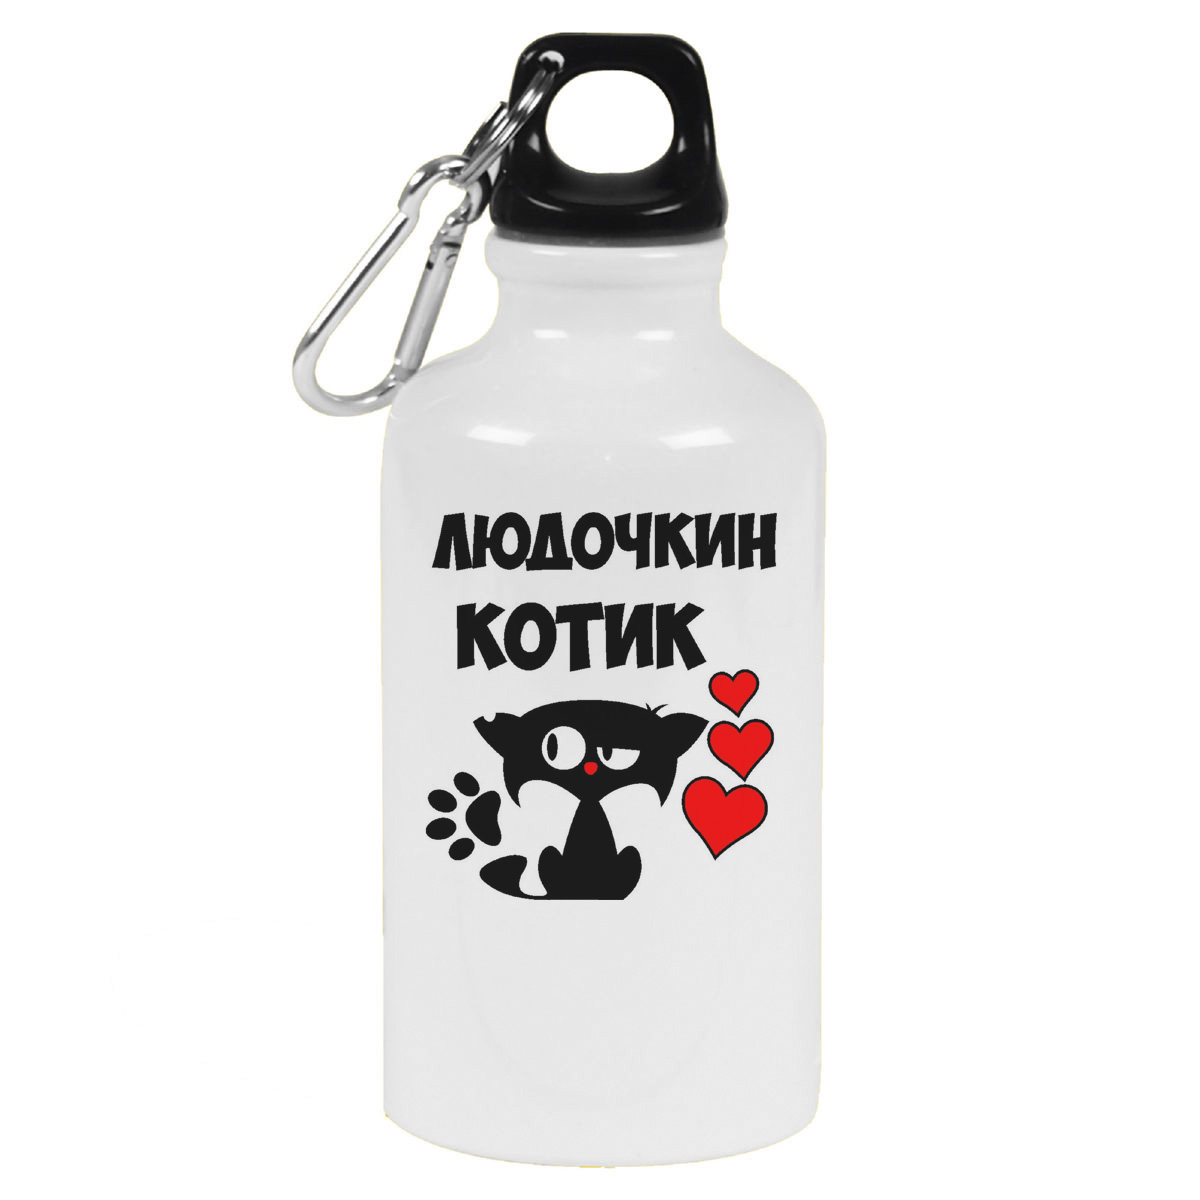 Бутылка спортивная CoolPodarok Людочкин котик